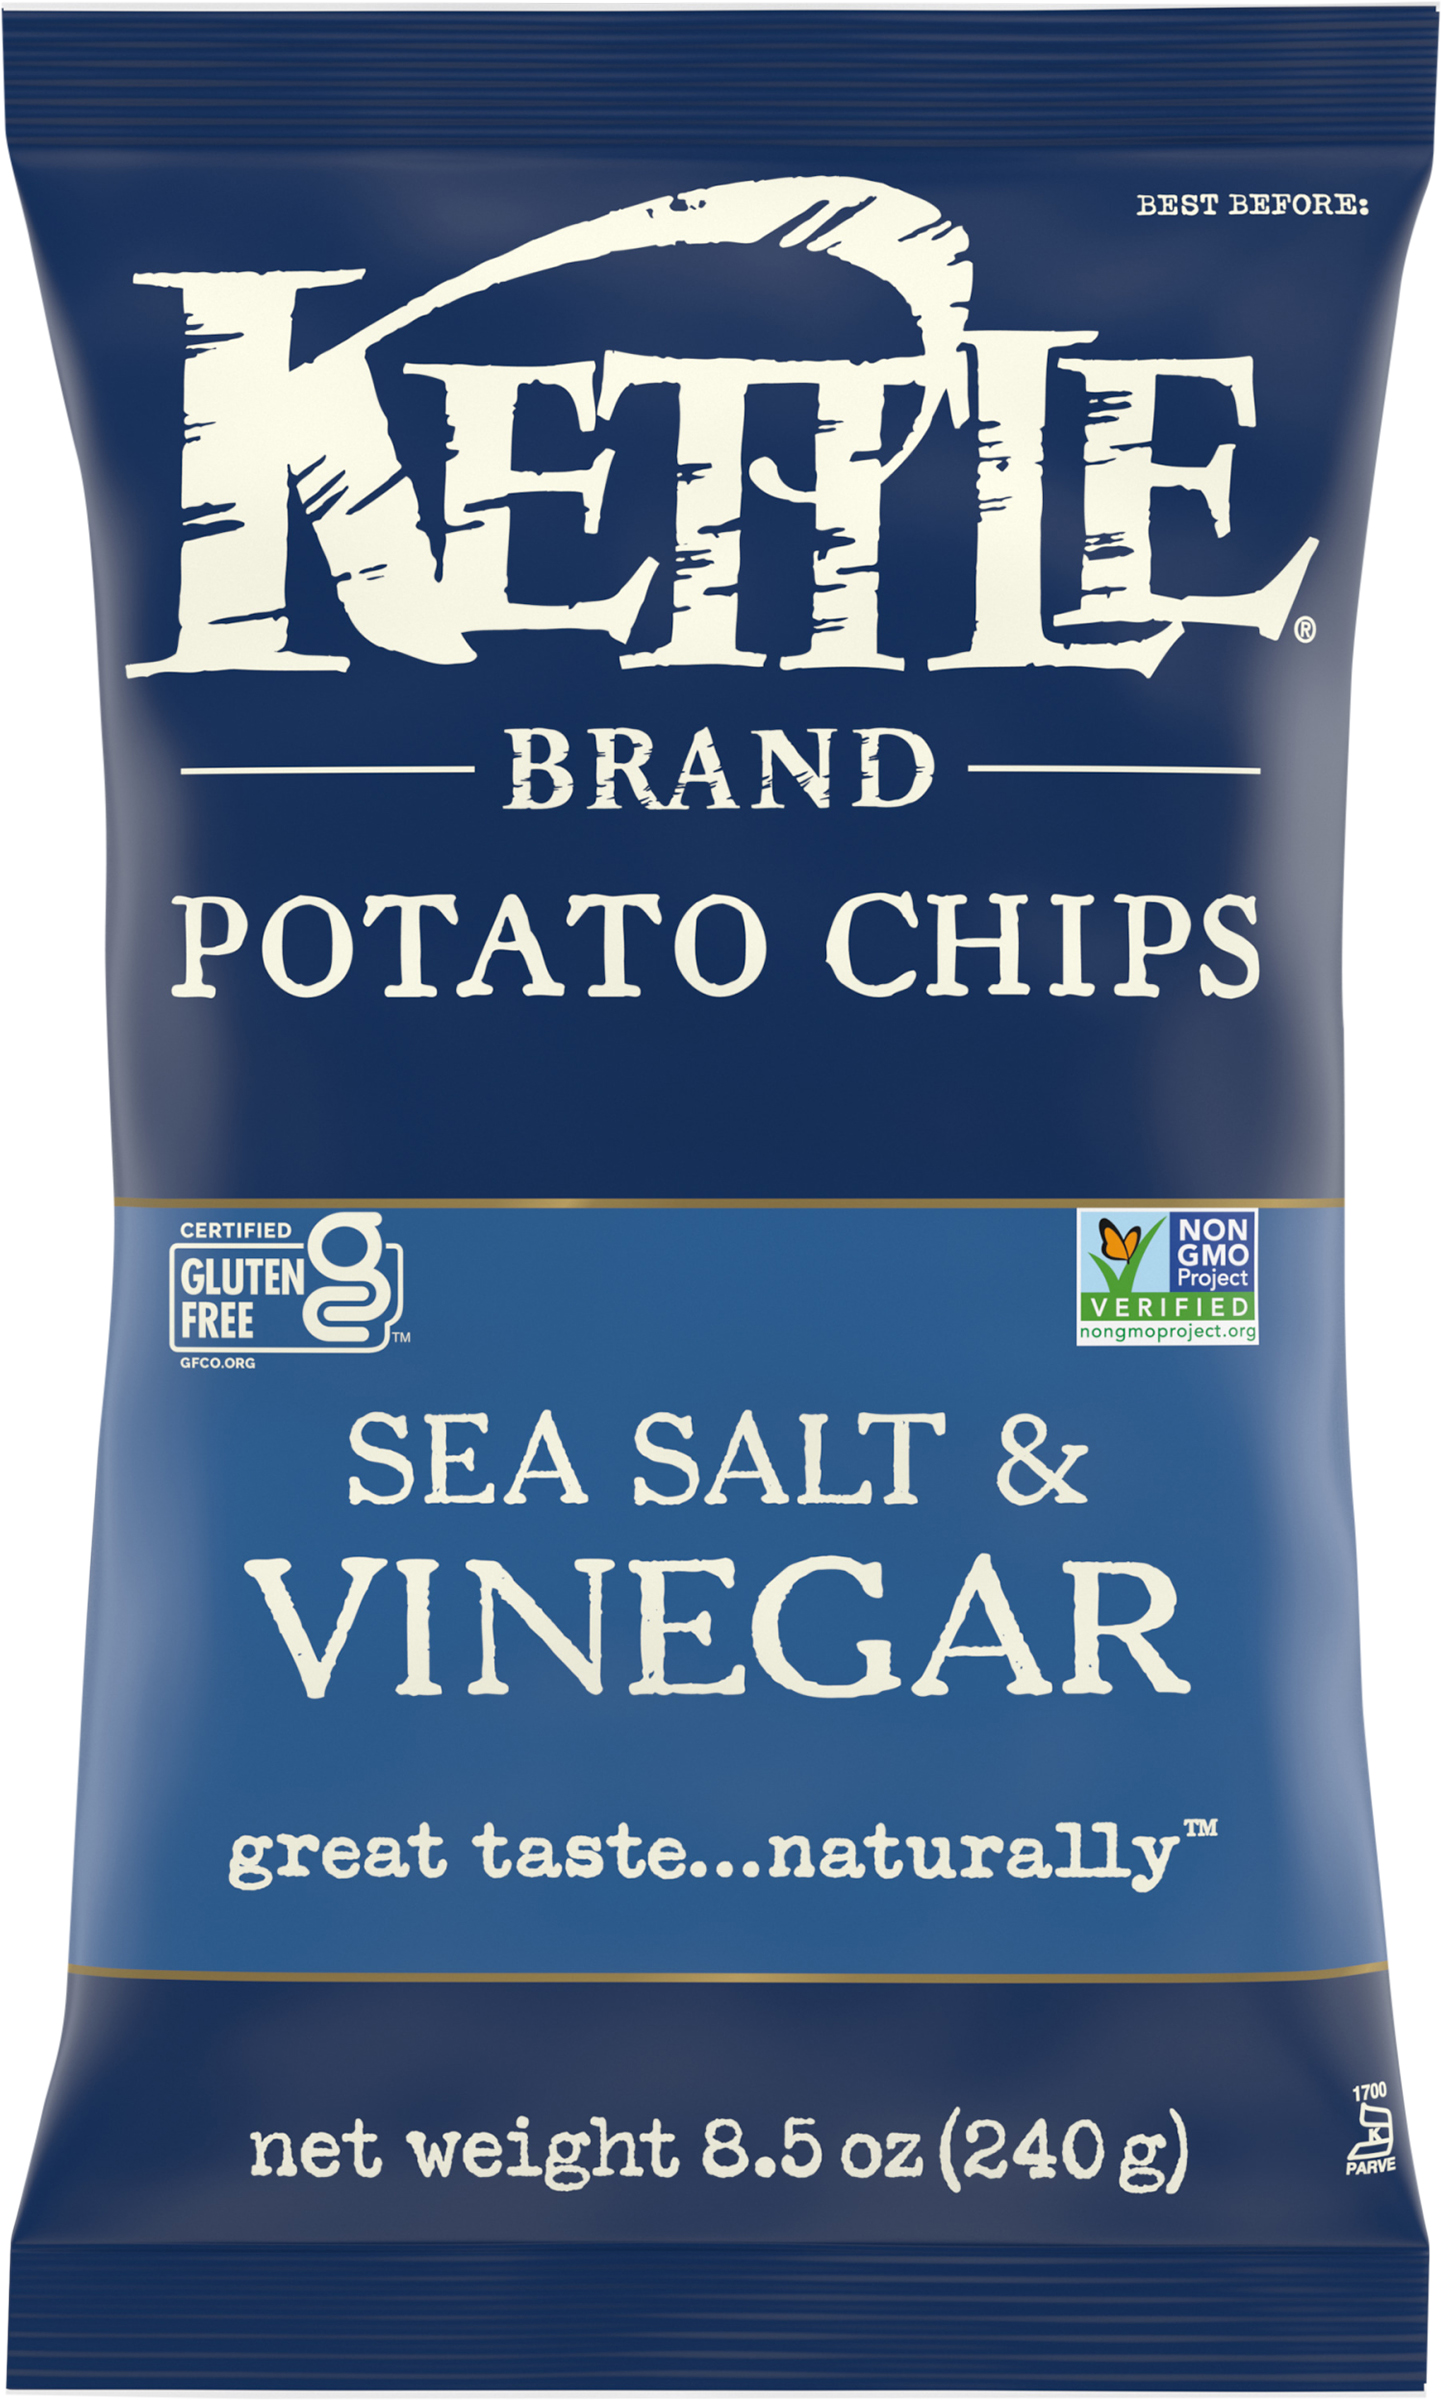 Kettle Brand Sea Salt & Vinegar Potato Chips 8.5 oz